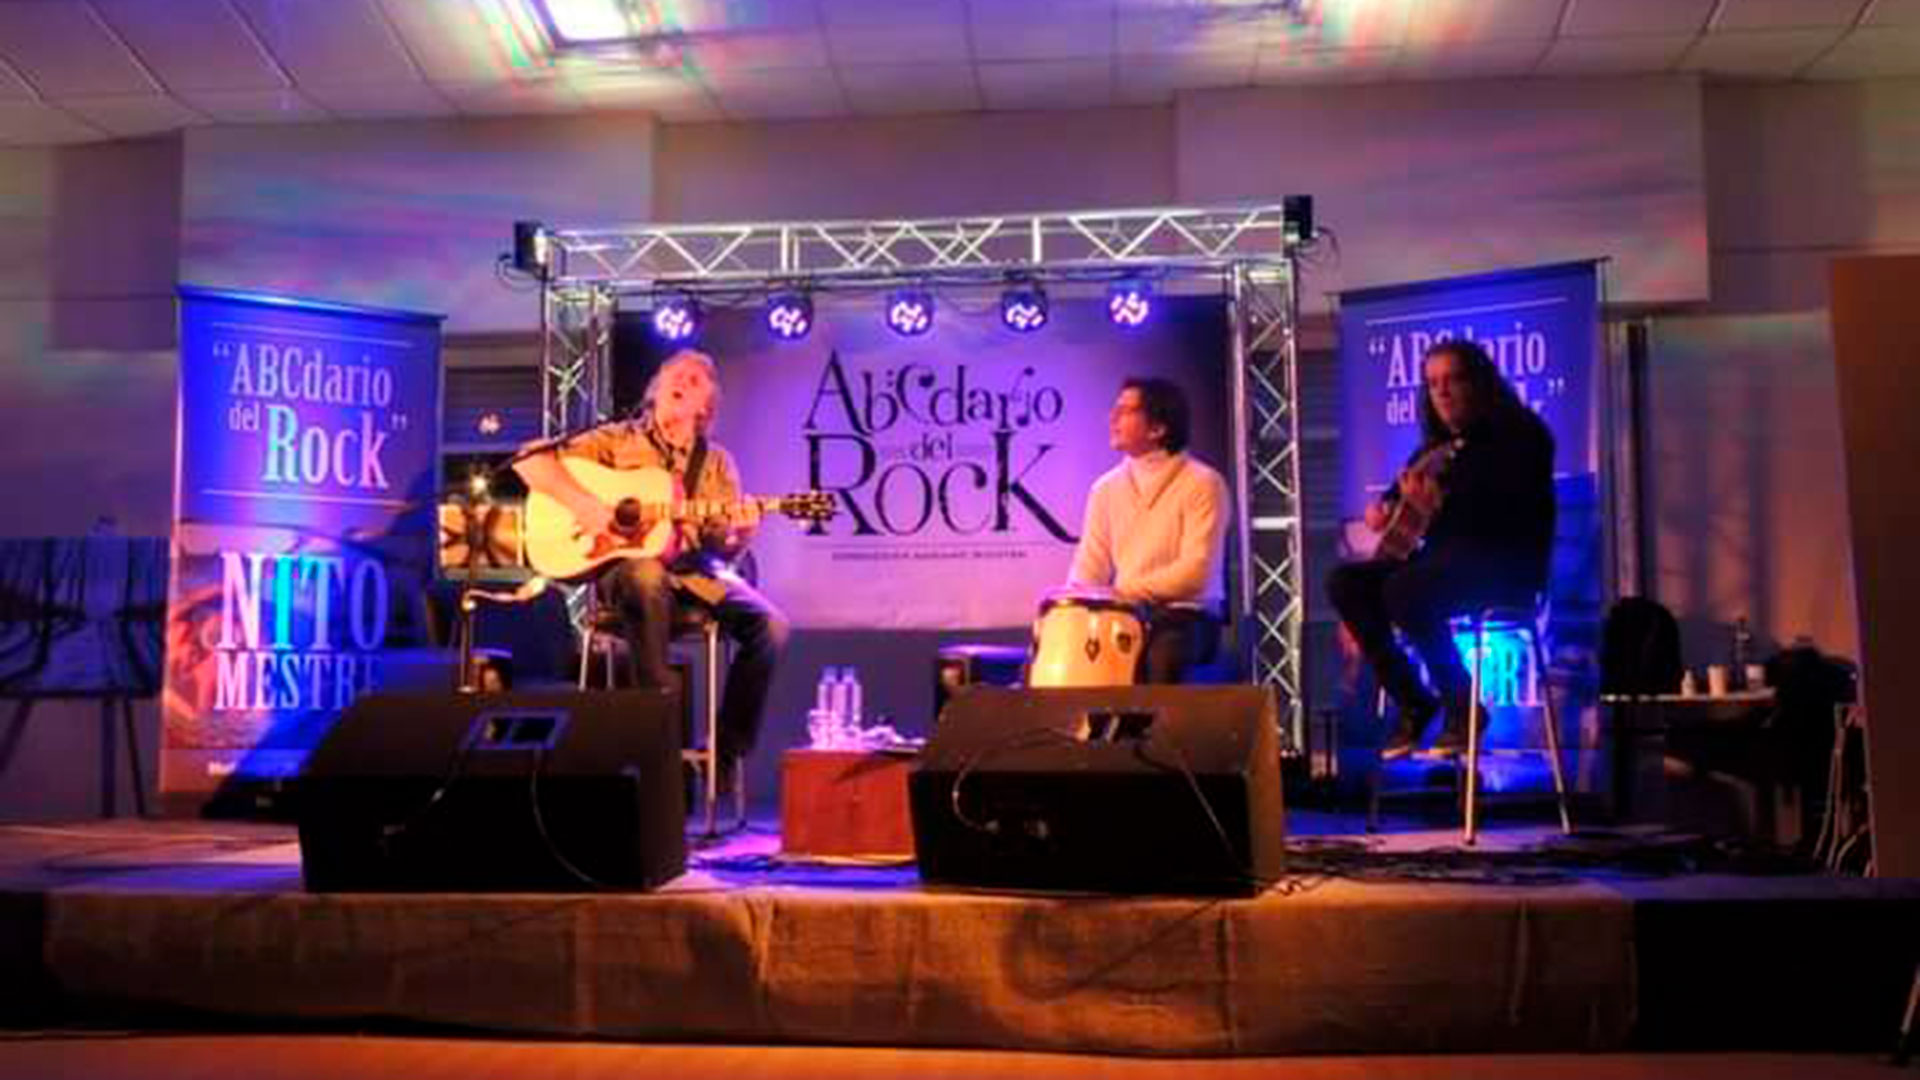 En un reencuentro con Nito Mestre en una serie de conciertos por la inclusión, llamado Abcedario del Rock 